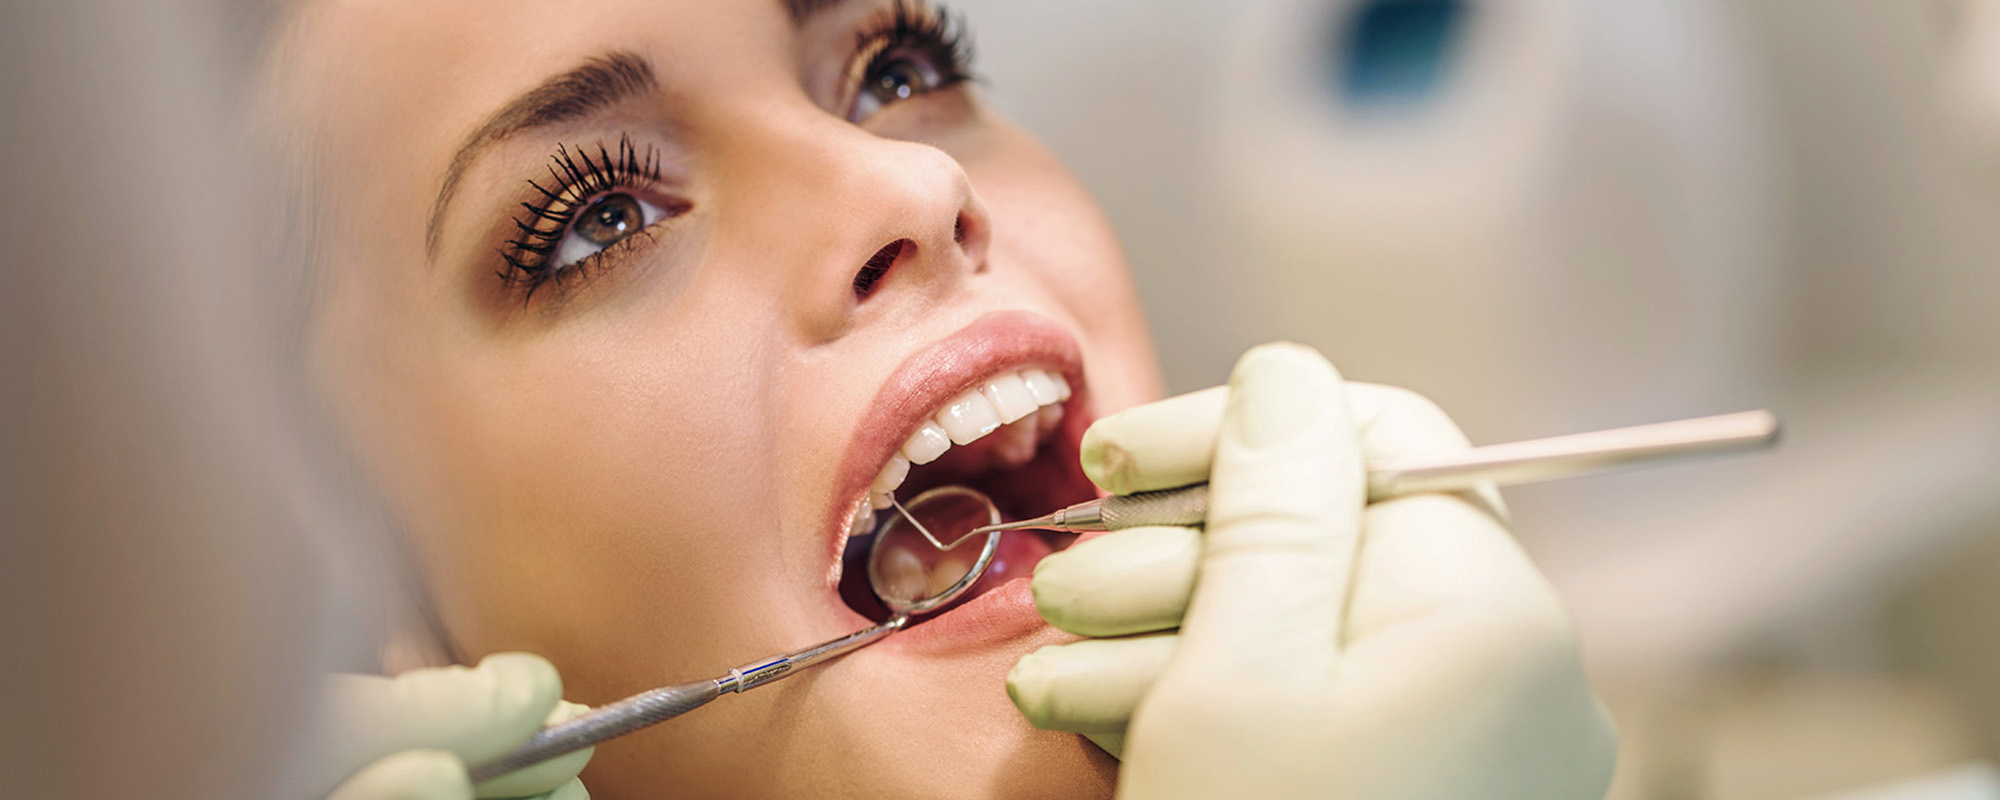 Можно ли удалять зуб во время месячных